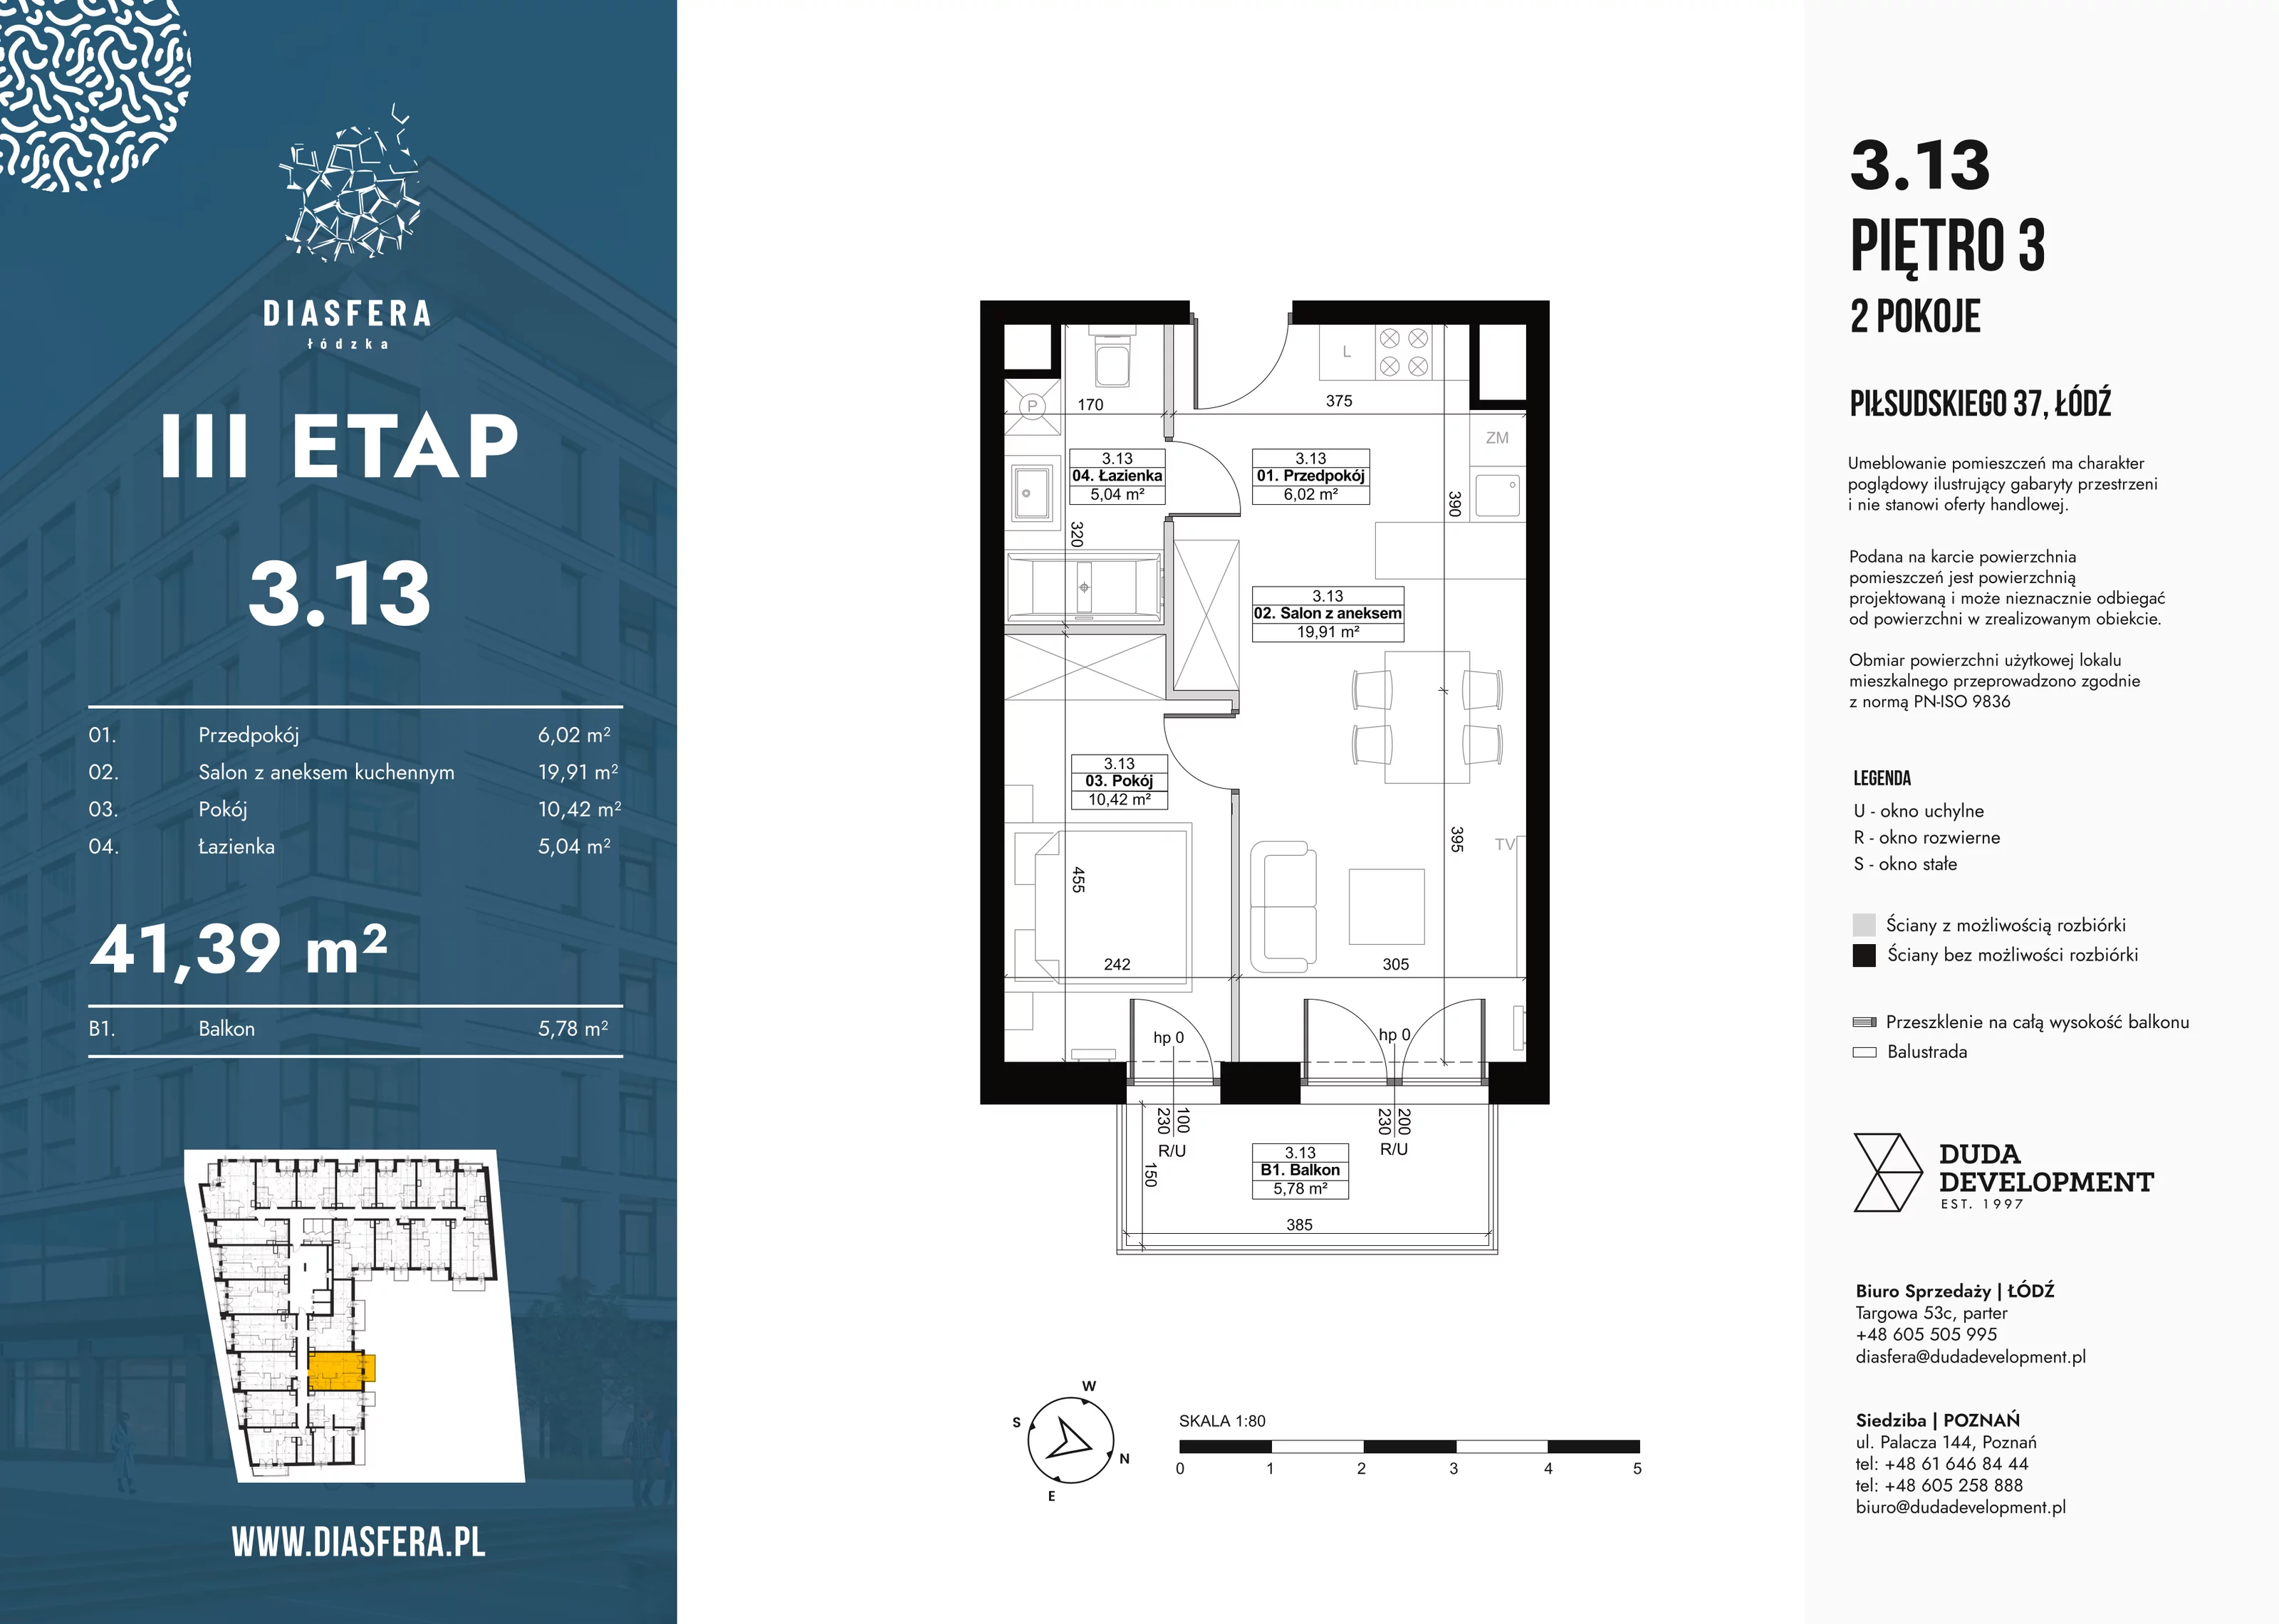 Mieszkanie 41,39 m², piętro 3, oferta nr 3_13, Diasfera III, Łódź, Śródmieście, al. Piłsudskiego 37